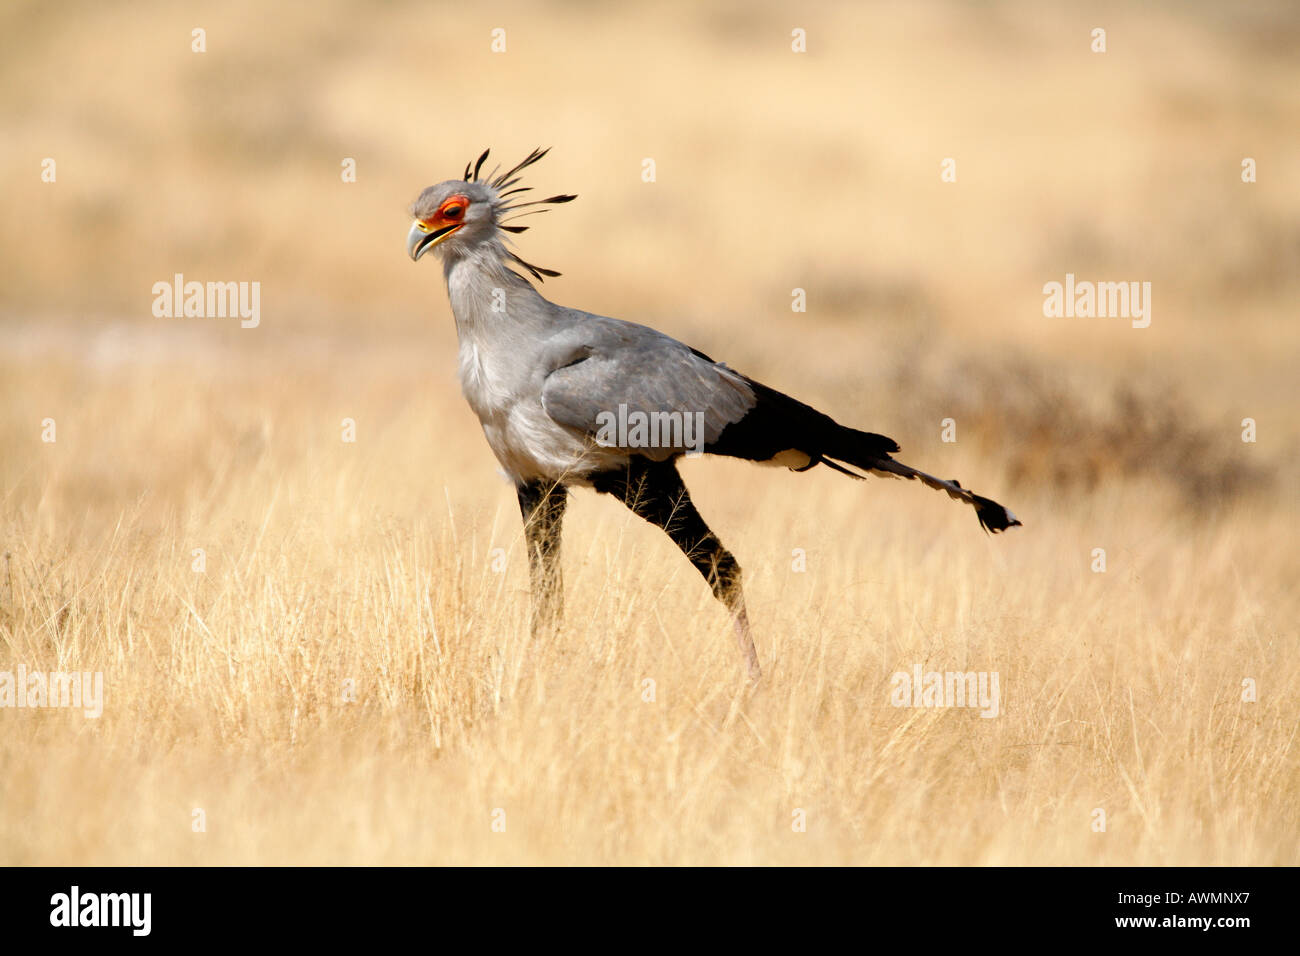 Sekretärin-Vogel marschieren über Savannah Grünland in Afrika. Stockfoto